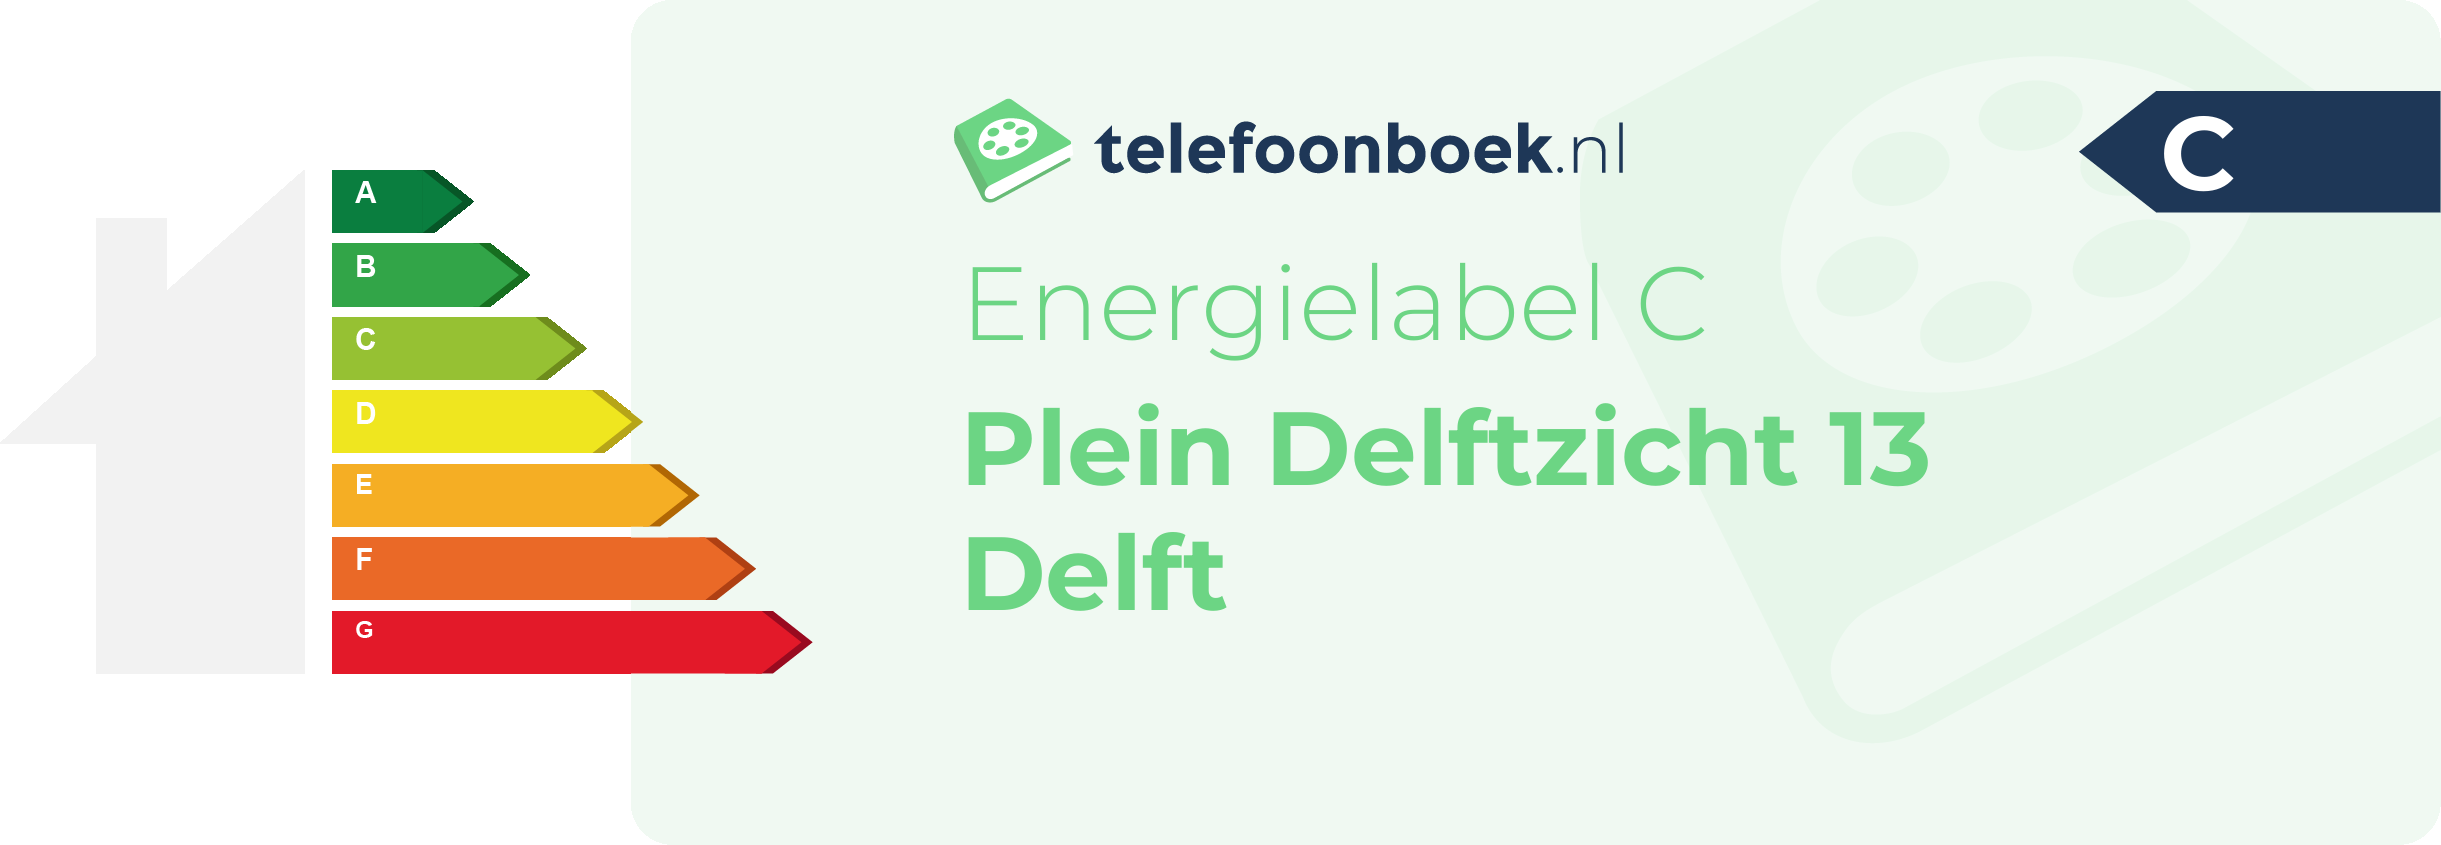 Energielabel Plein Delftzicht 13 Delft